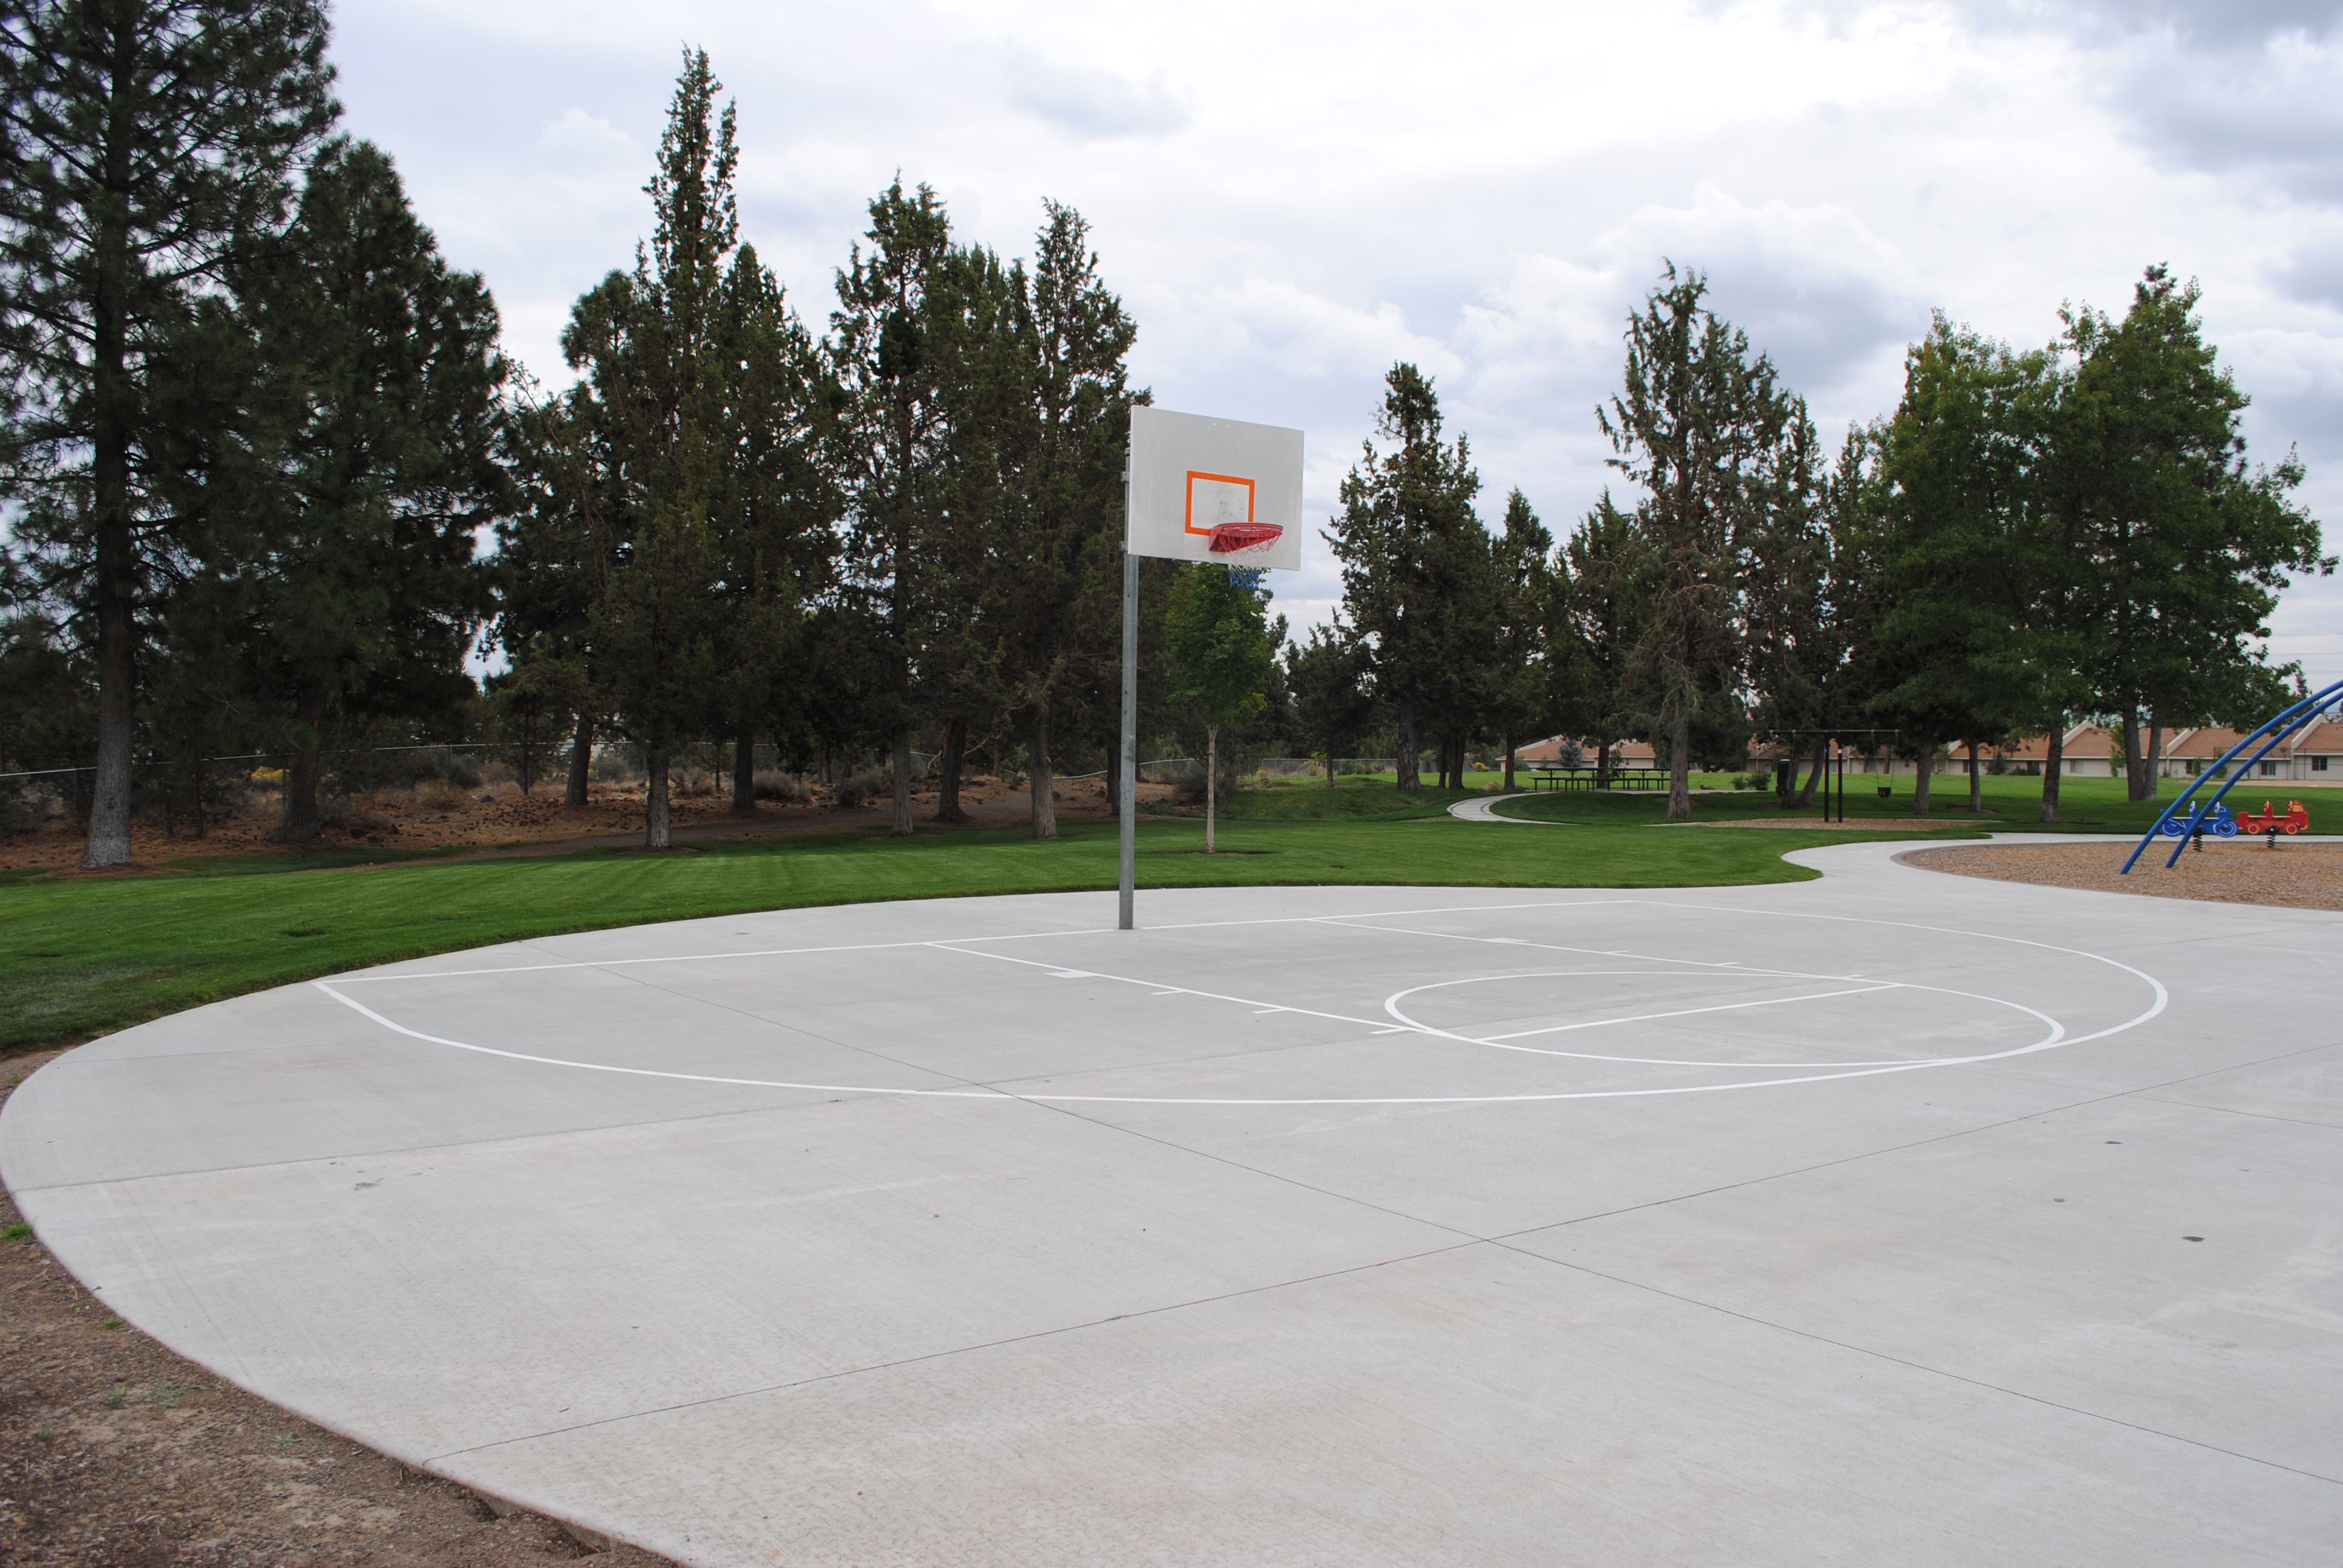 a basketball hoop at kiwanis park